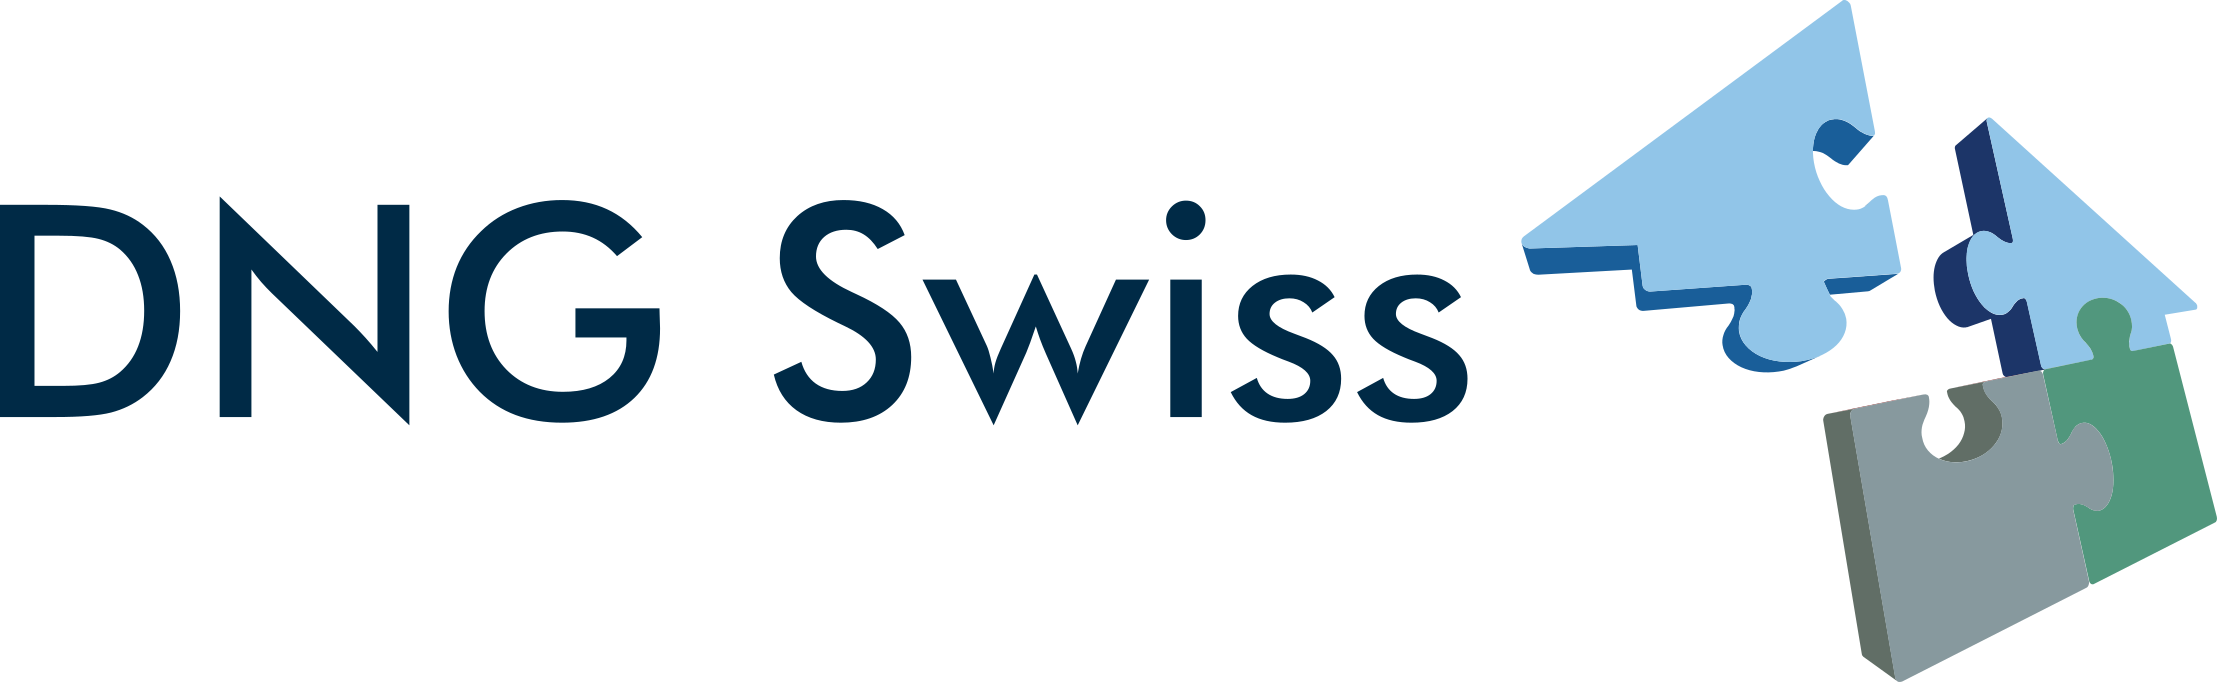 DNG Swiss | Wir vergleichen – Sie sparen!